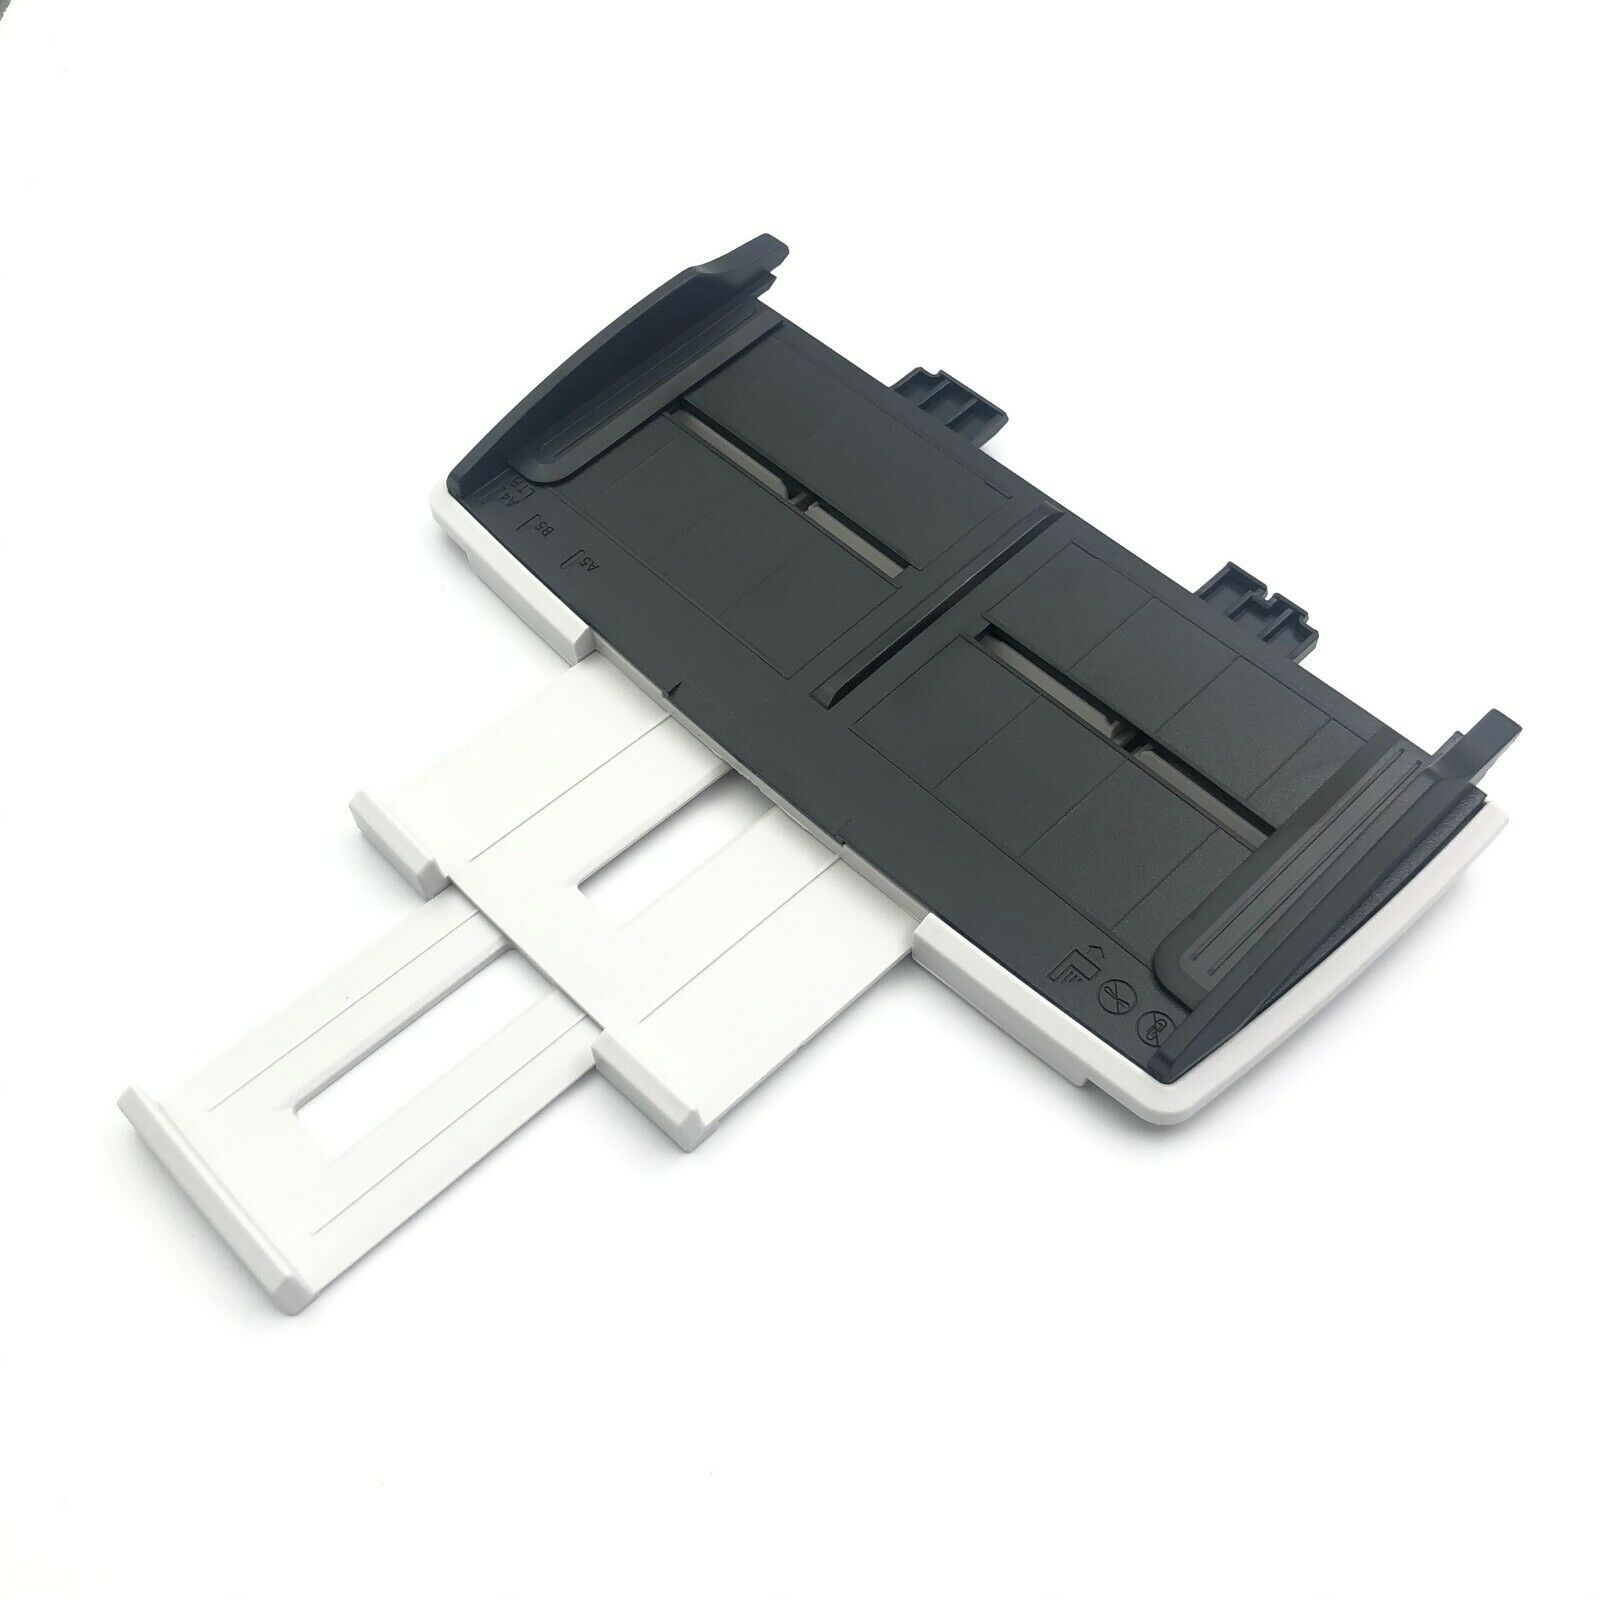 Pa03540-e905 Input Adf Paper Chute Tray For Fujitsu Fi-6130 Fi-6230 Fi-6140 6240